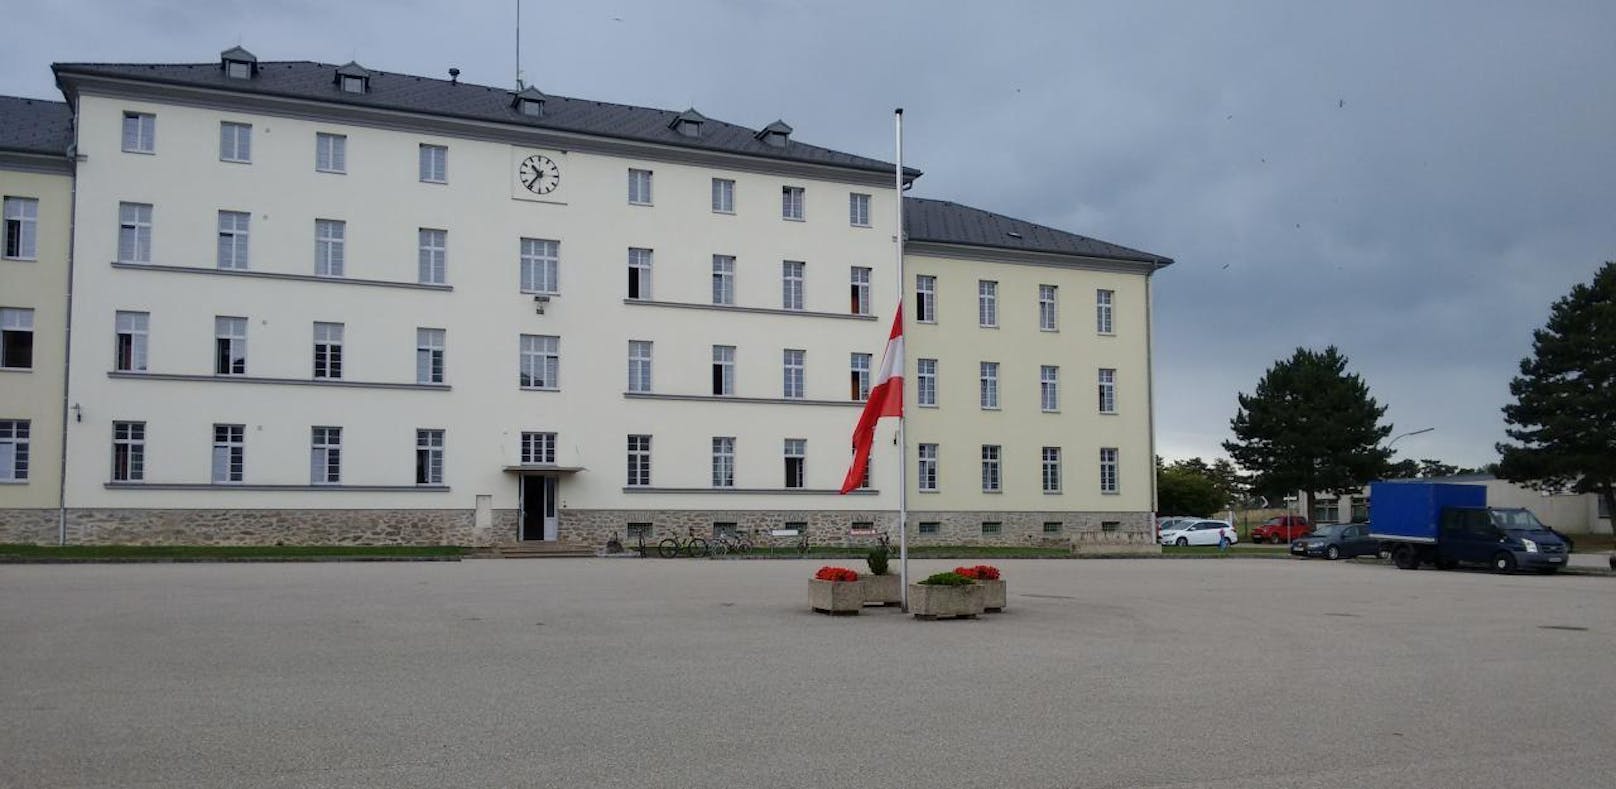 Die Radetzky-Kaserne in Horn.